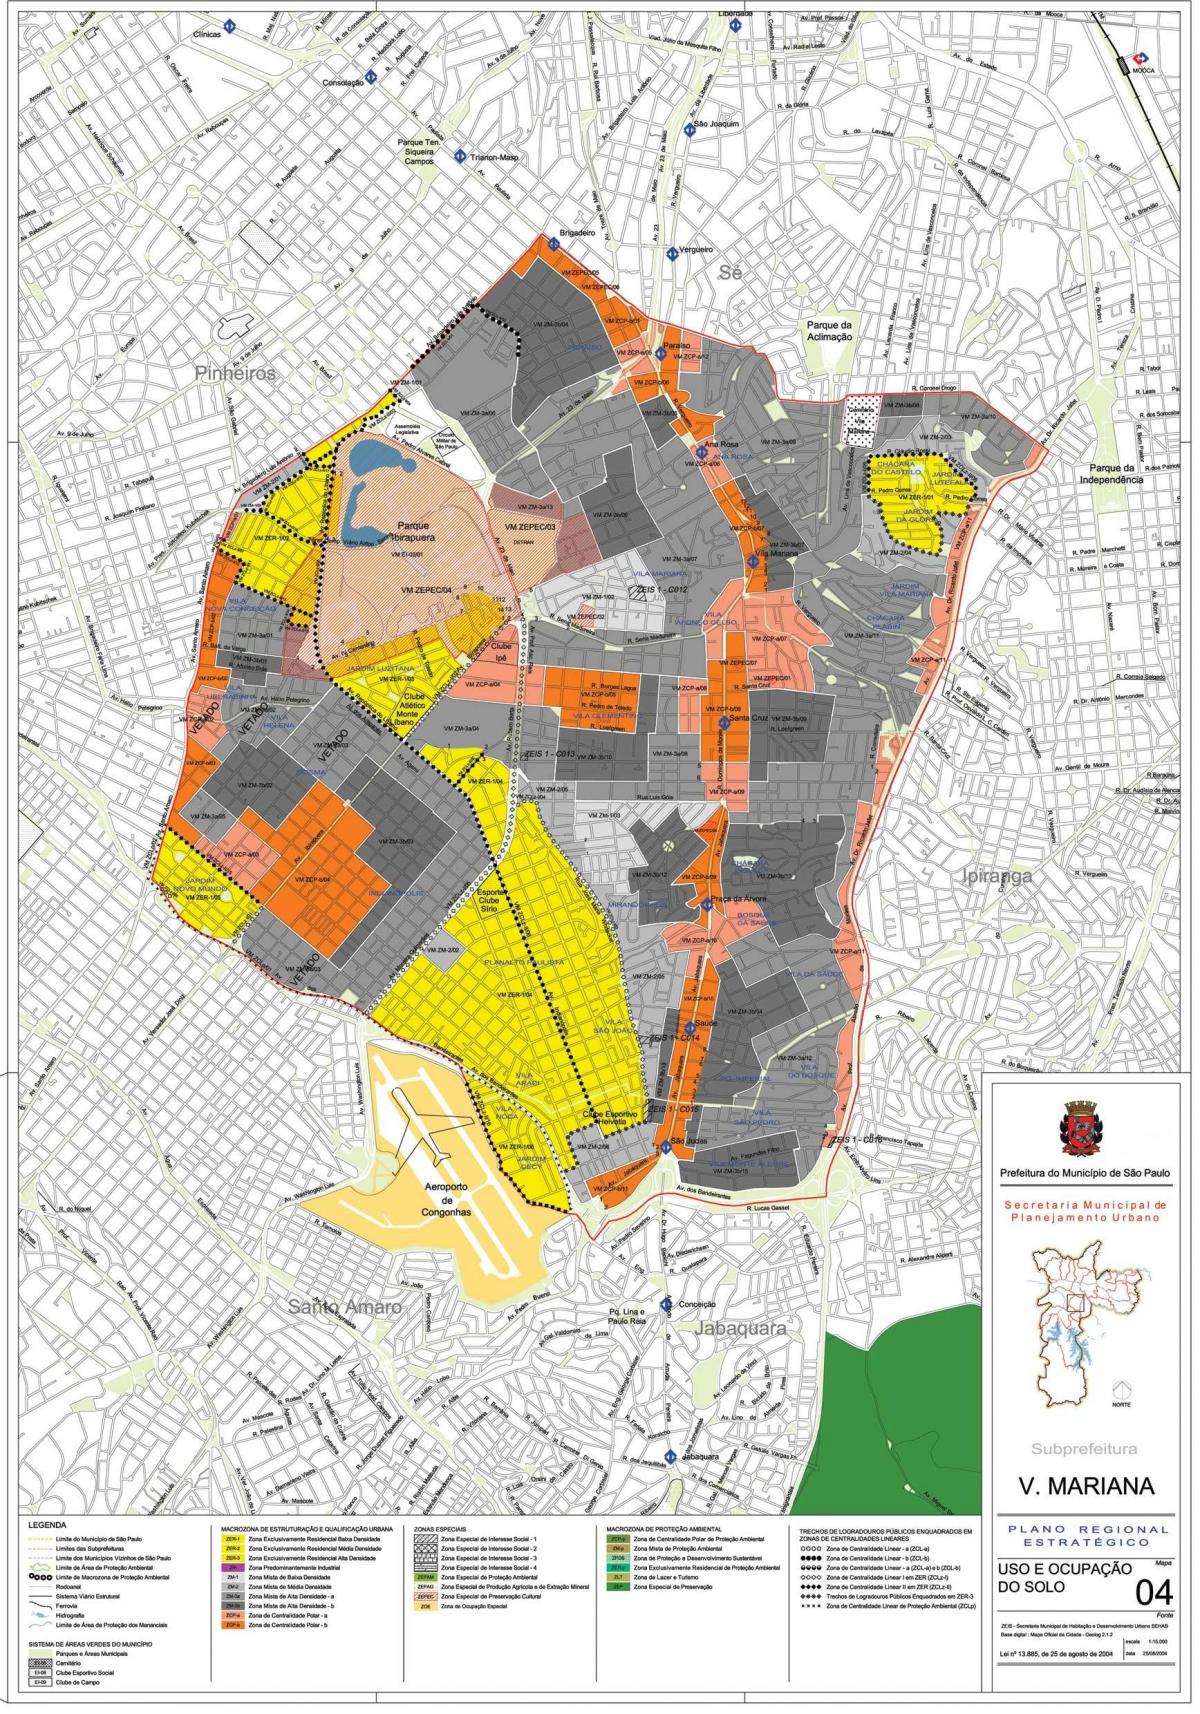 Peta dari Vila Mariana Sao Paulo - Pendudukan tanah